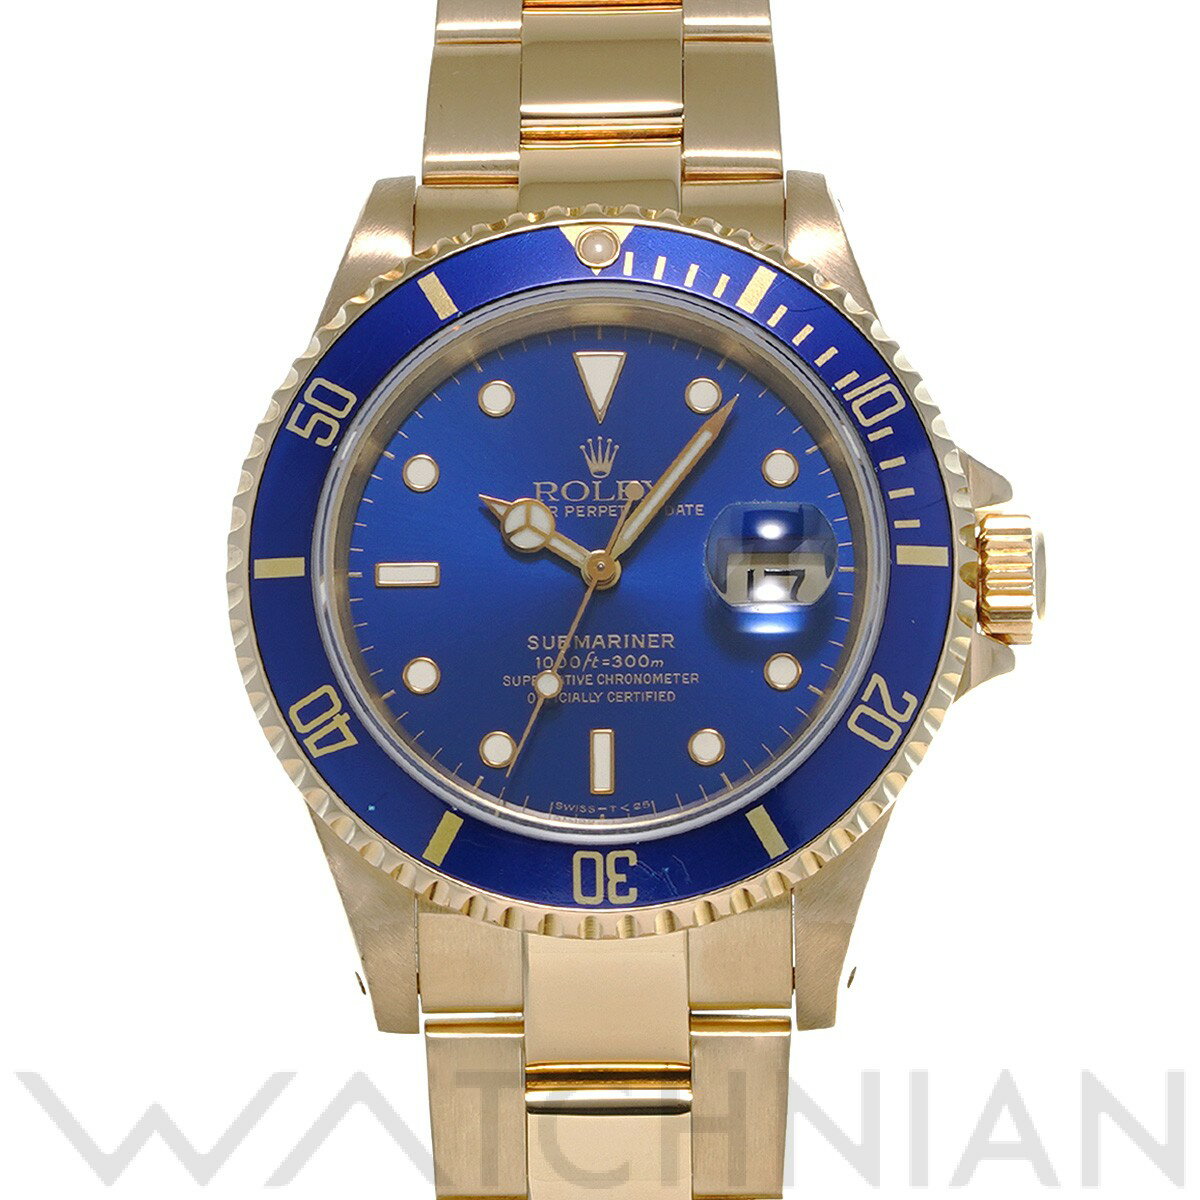 【5種選べるクーポン】【ローン60回払い無金利】【中古】 ロレックス ROLEX サブマリーナ デイト 16618 X番(1993年頃製造) ブルー メンズ 腕時計